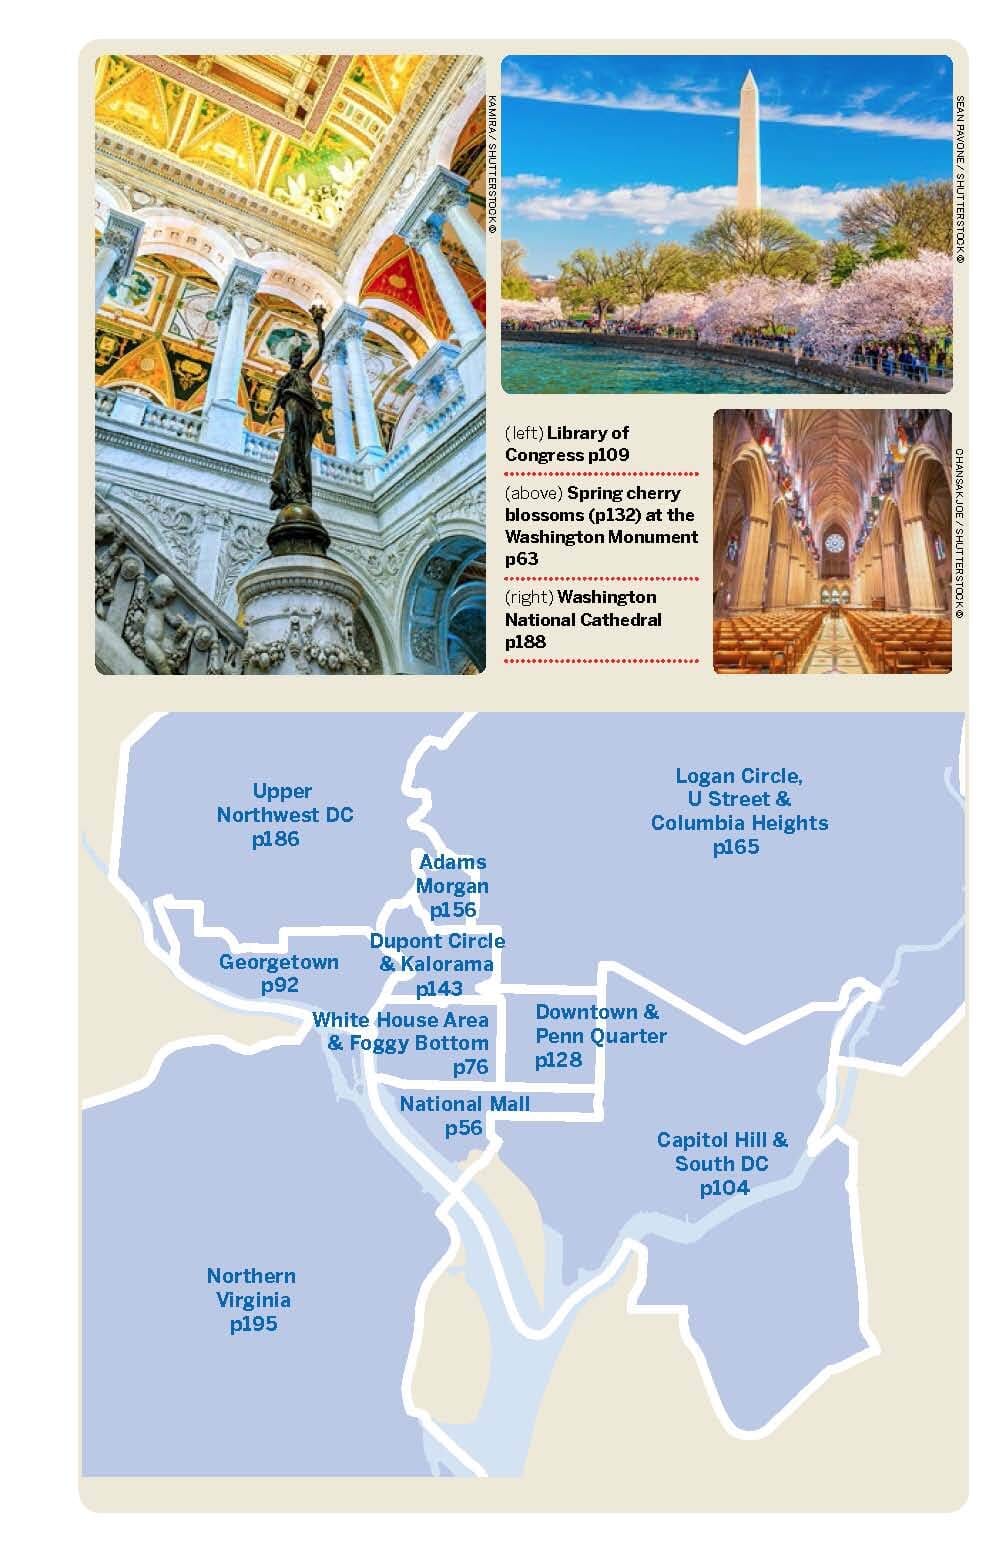 Guide de voyage (en anglais) - Washington DC | Lonely Planet guide de voyage Lonely Planet EN 